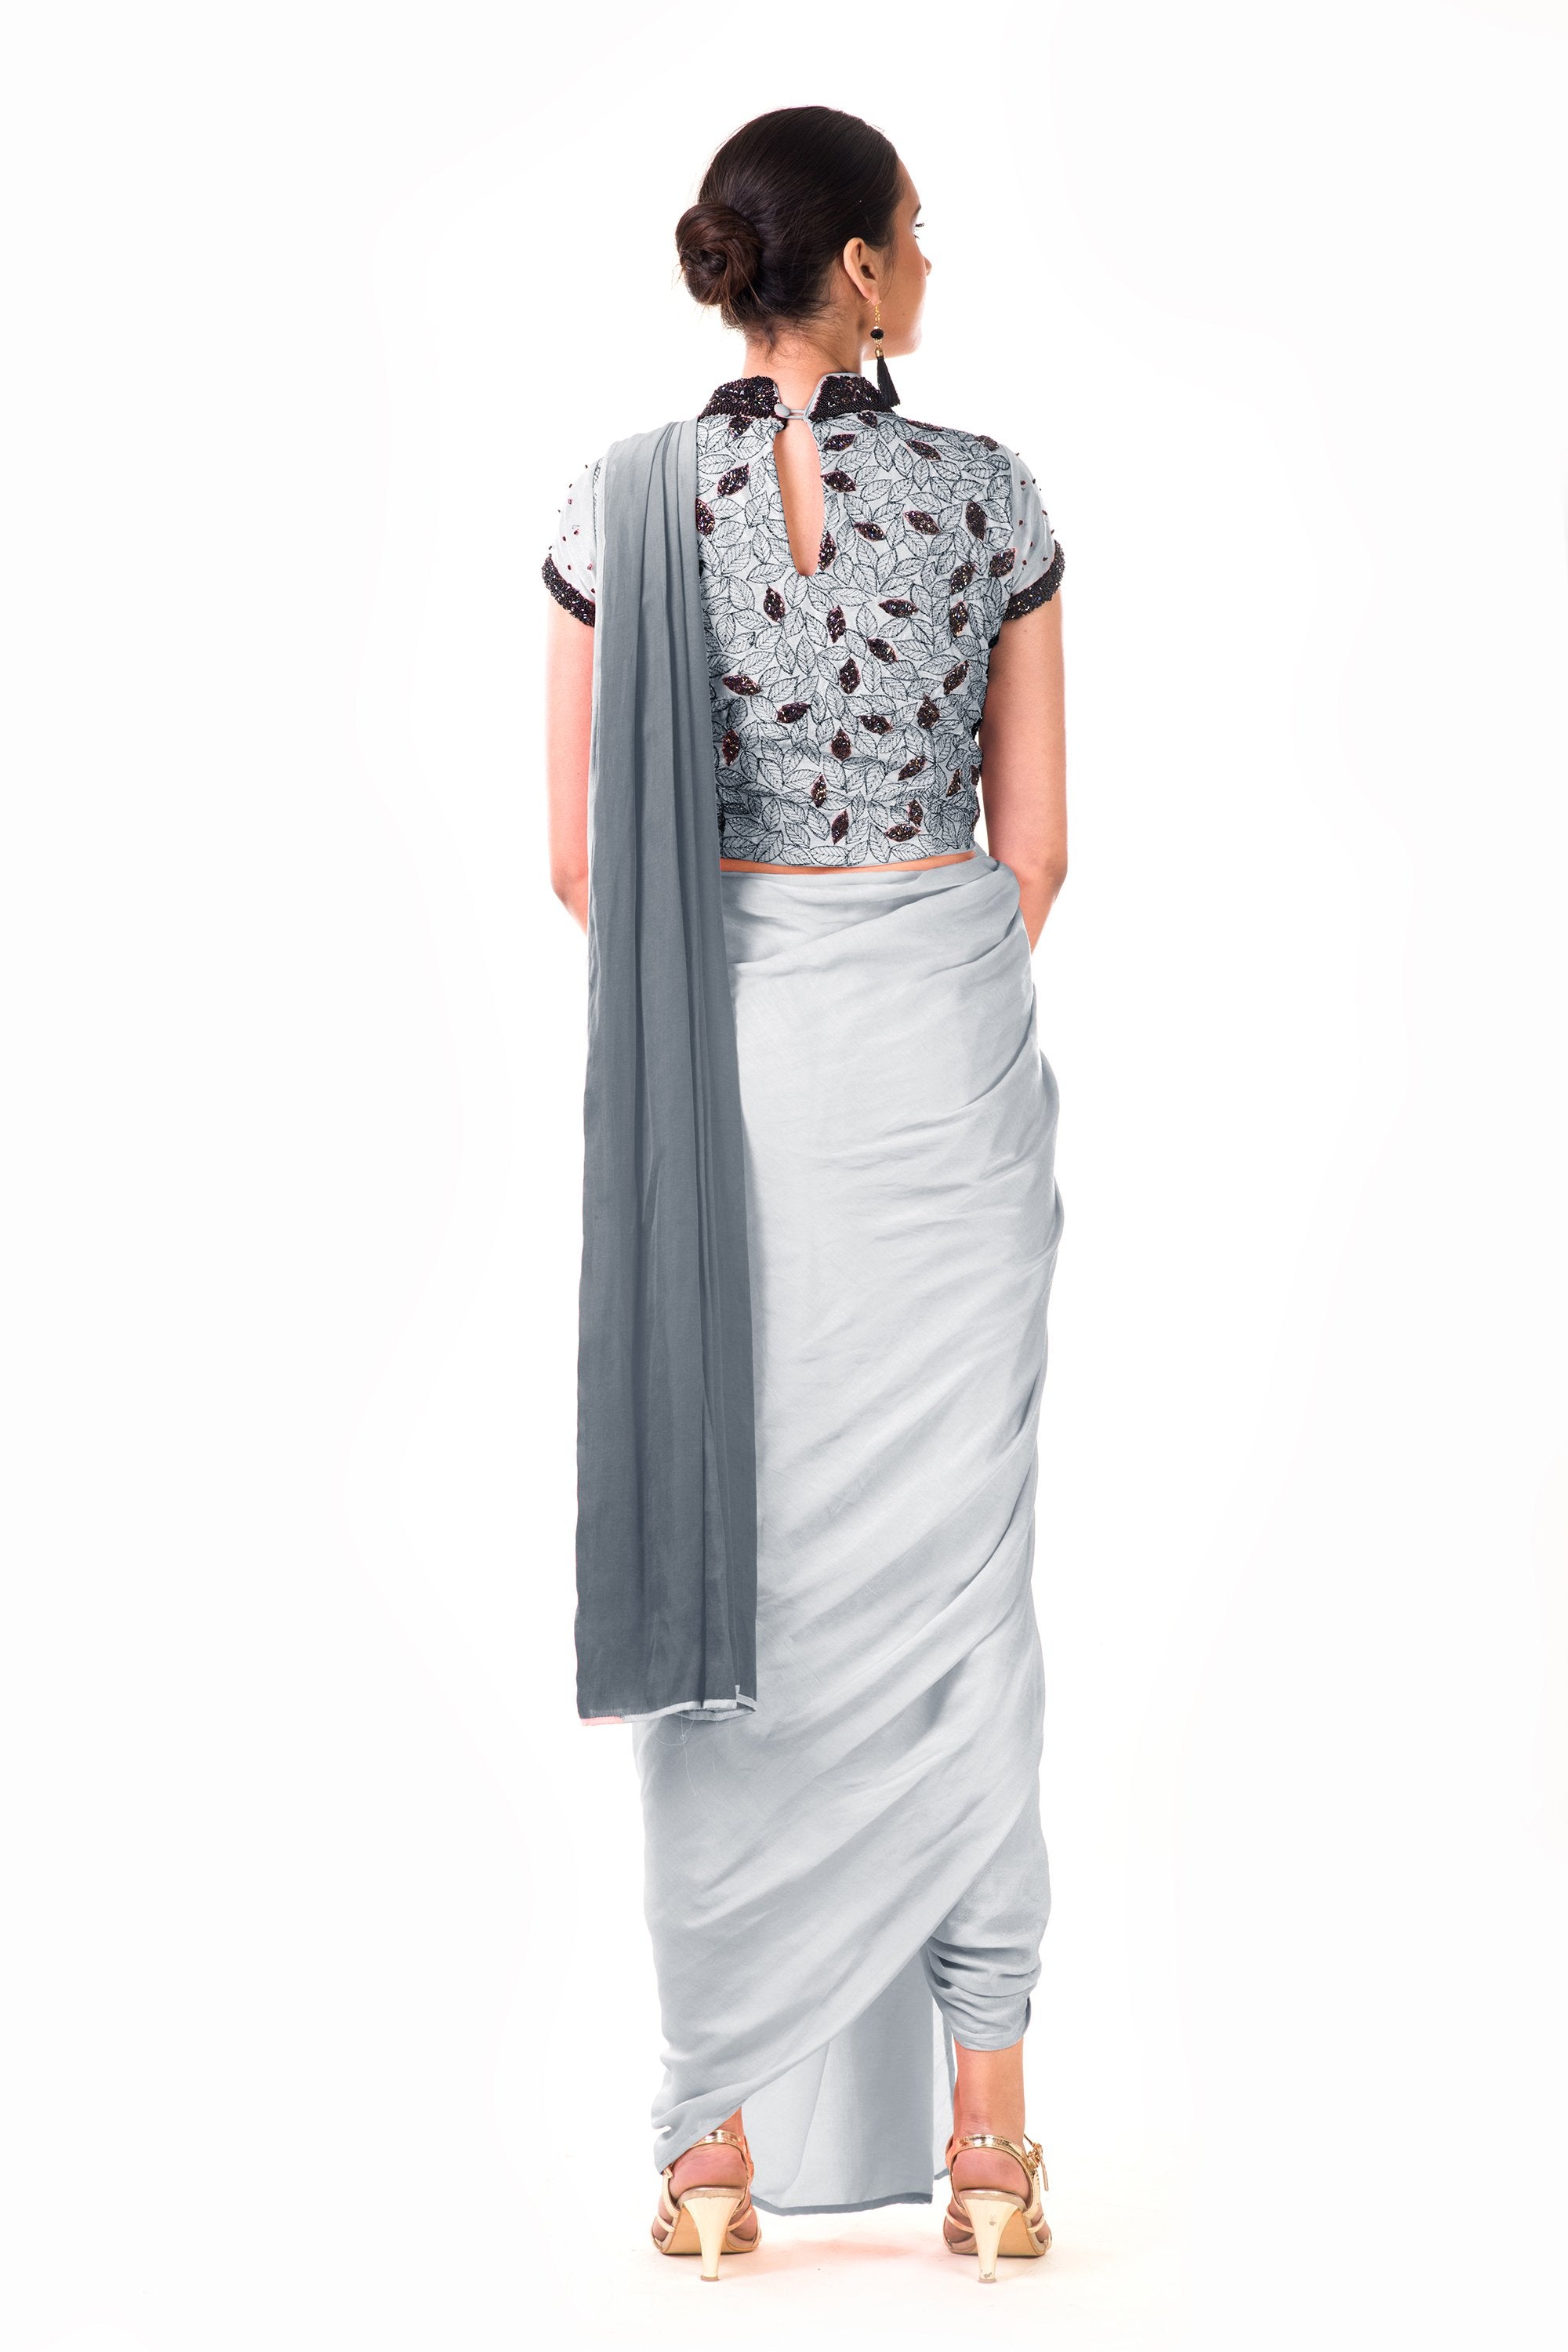 How to wear a Dhoti Saree | Fancy sarees, Saree draping styles, Saree styles